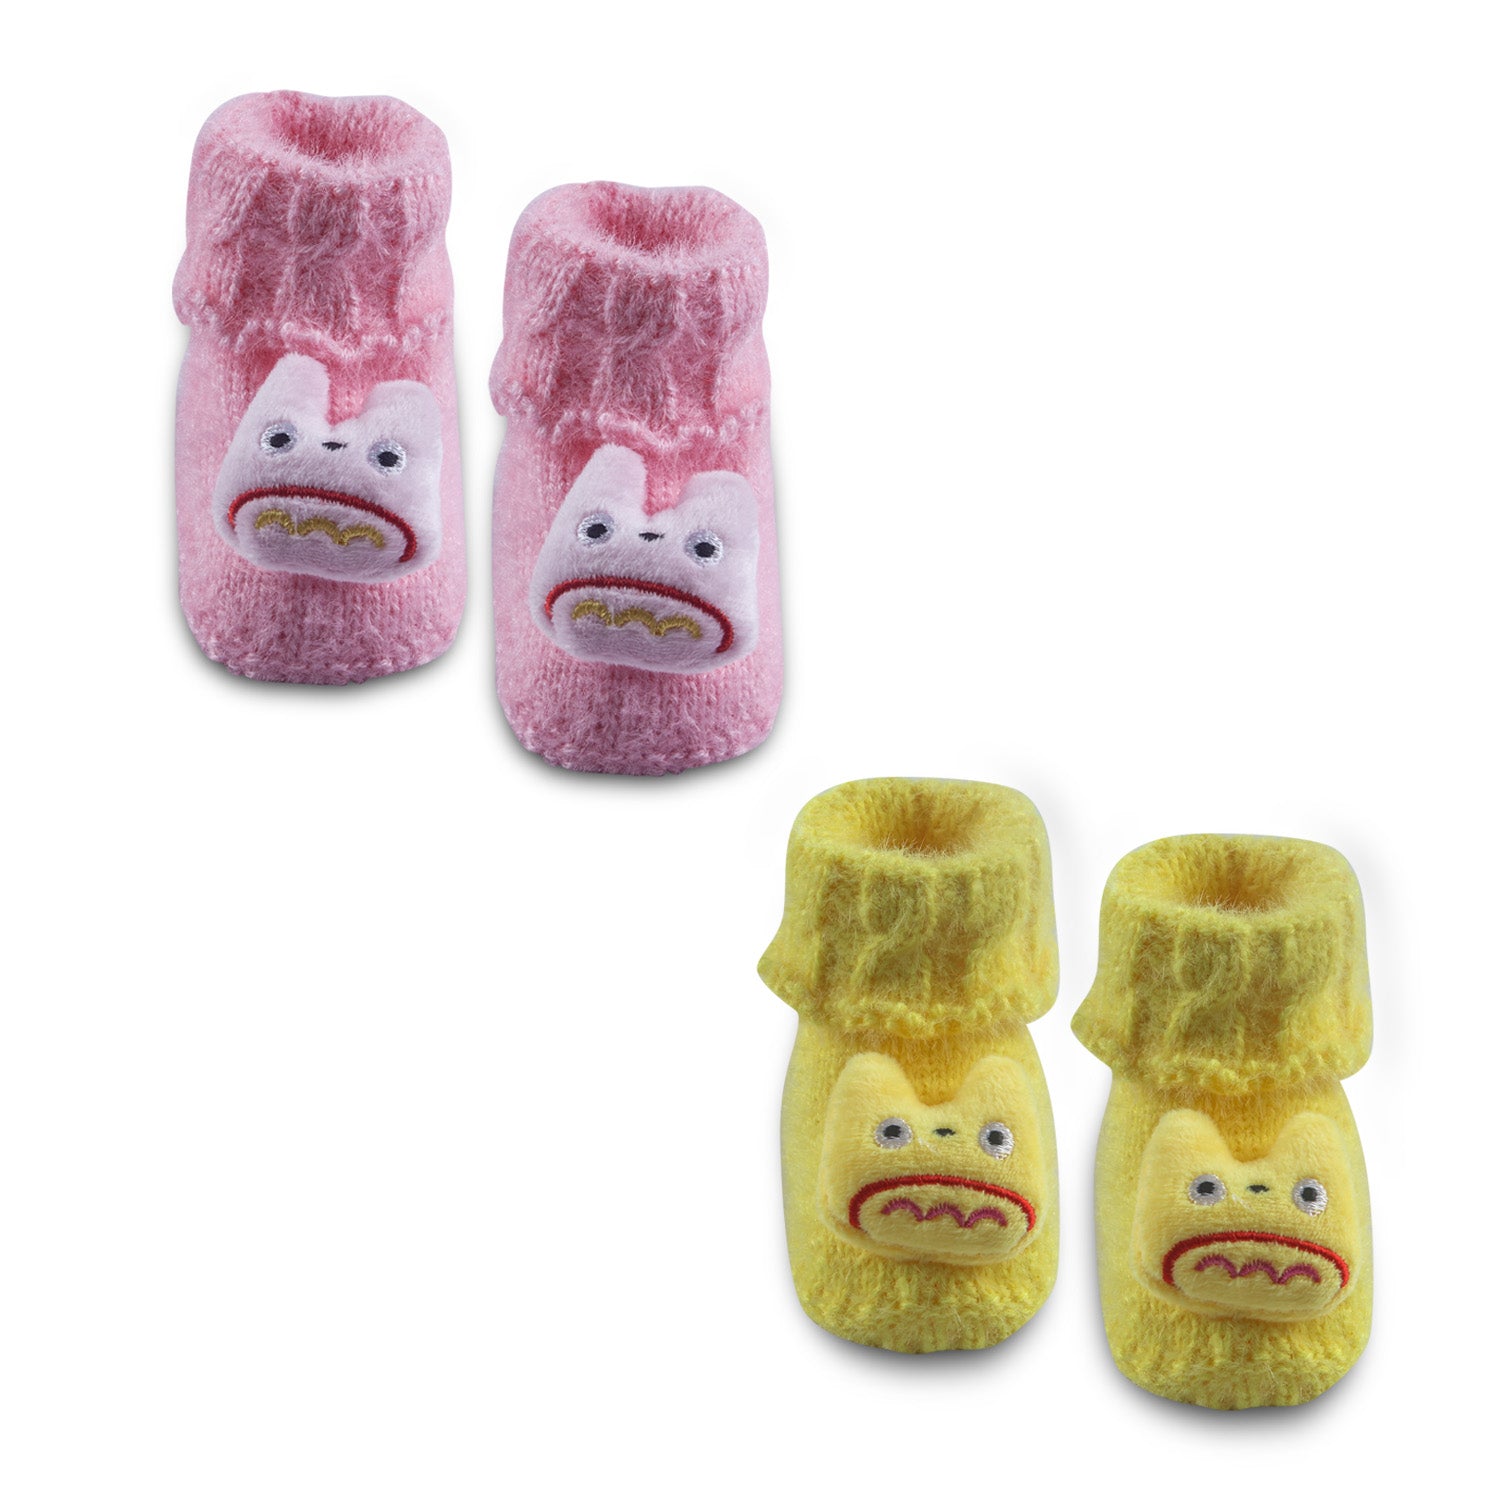 Newborn Crochet Woollen Booties Cartoon - Yellow, Pink - Baby Moo